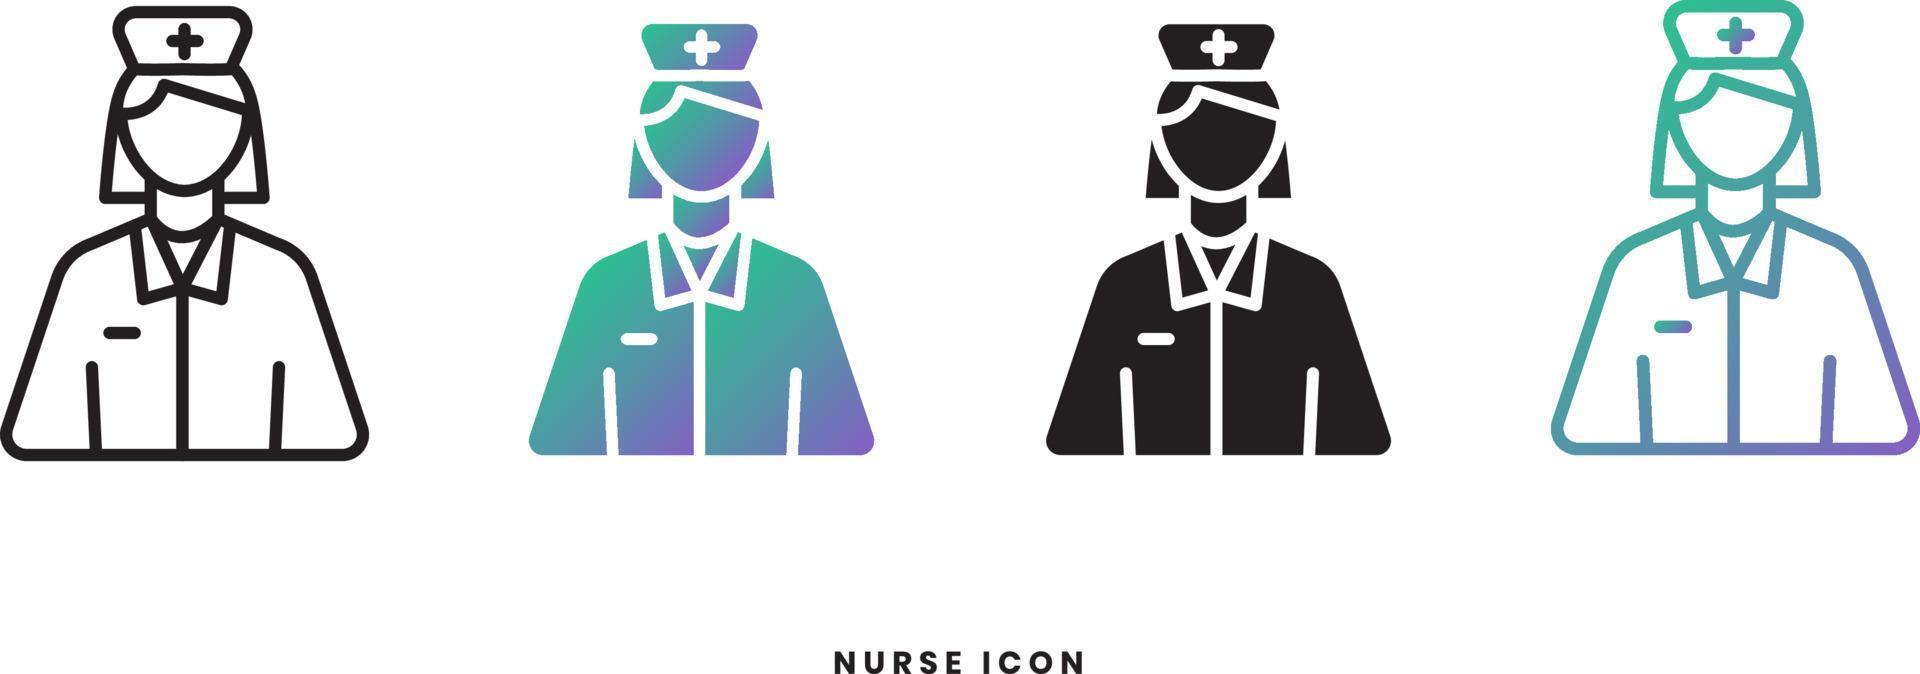 ícone feminino de enfermeira vetorial em estilos sólido, gradiente e linha. cores da moda. Isolado em um fundo branco vetor